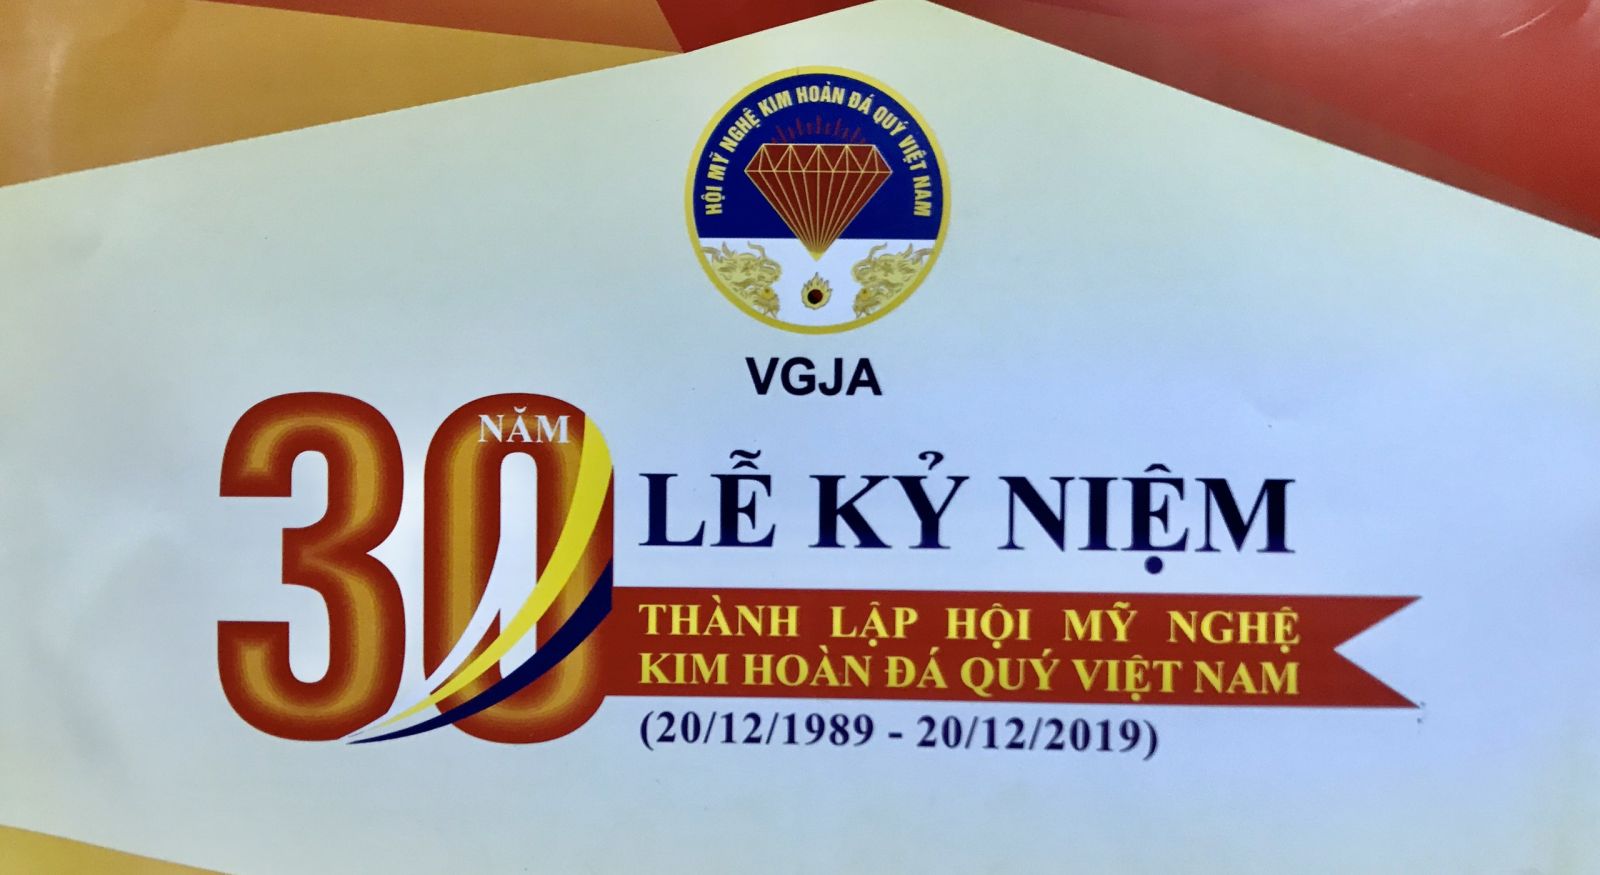 Kỷ niệm 30 năm nhày thành lập Hội Mỹ nghệ Kim hoàn đá quý Việt Nam (20/12/1989-20/12/2019)